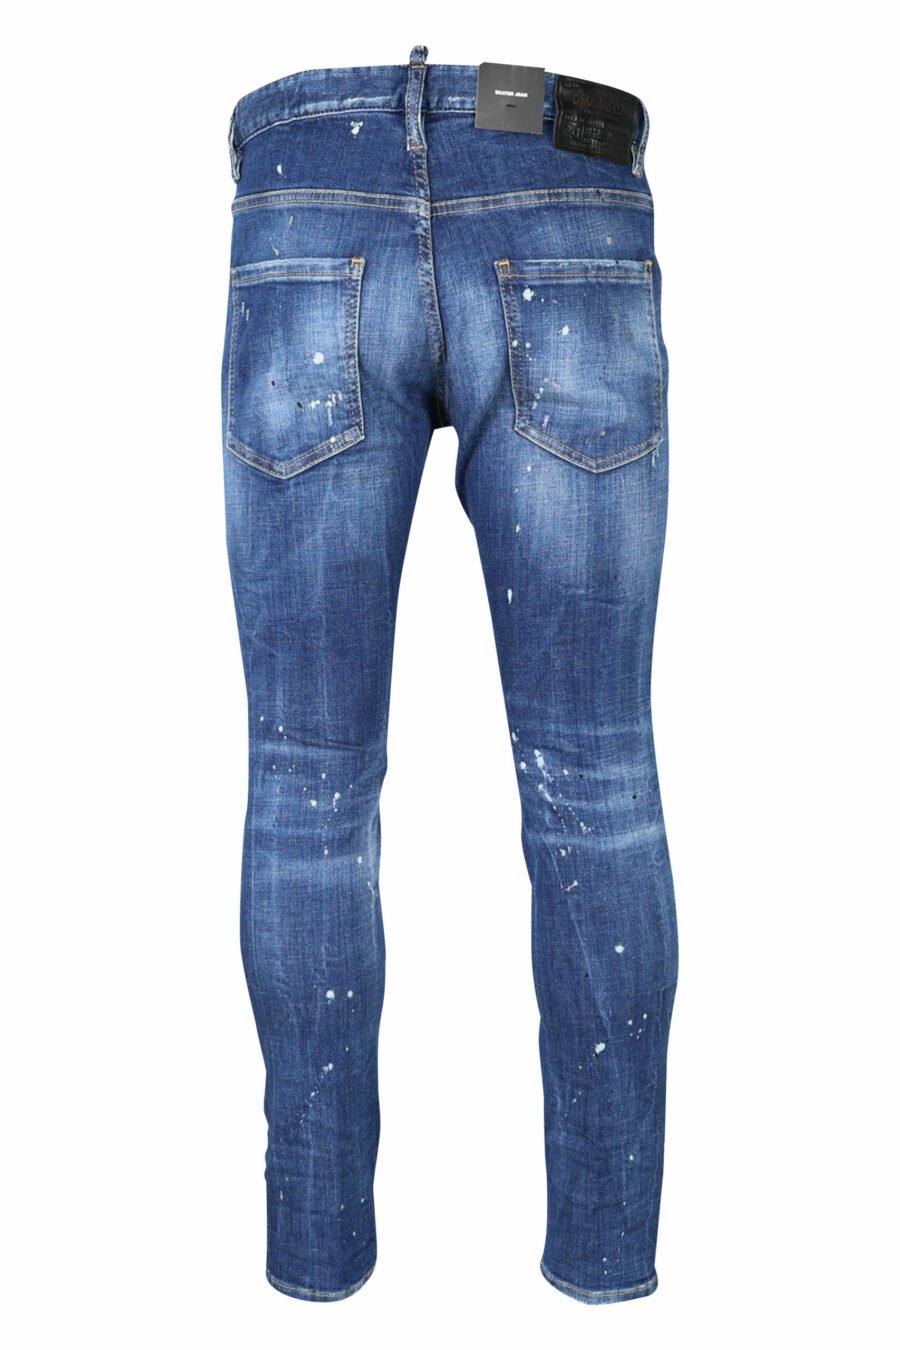 Jeans "super twinkey jean" blau ausgefranst mit schwarz gerissen - 8054148124328 2 skaliert